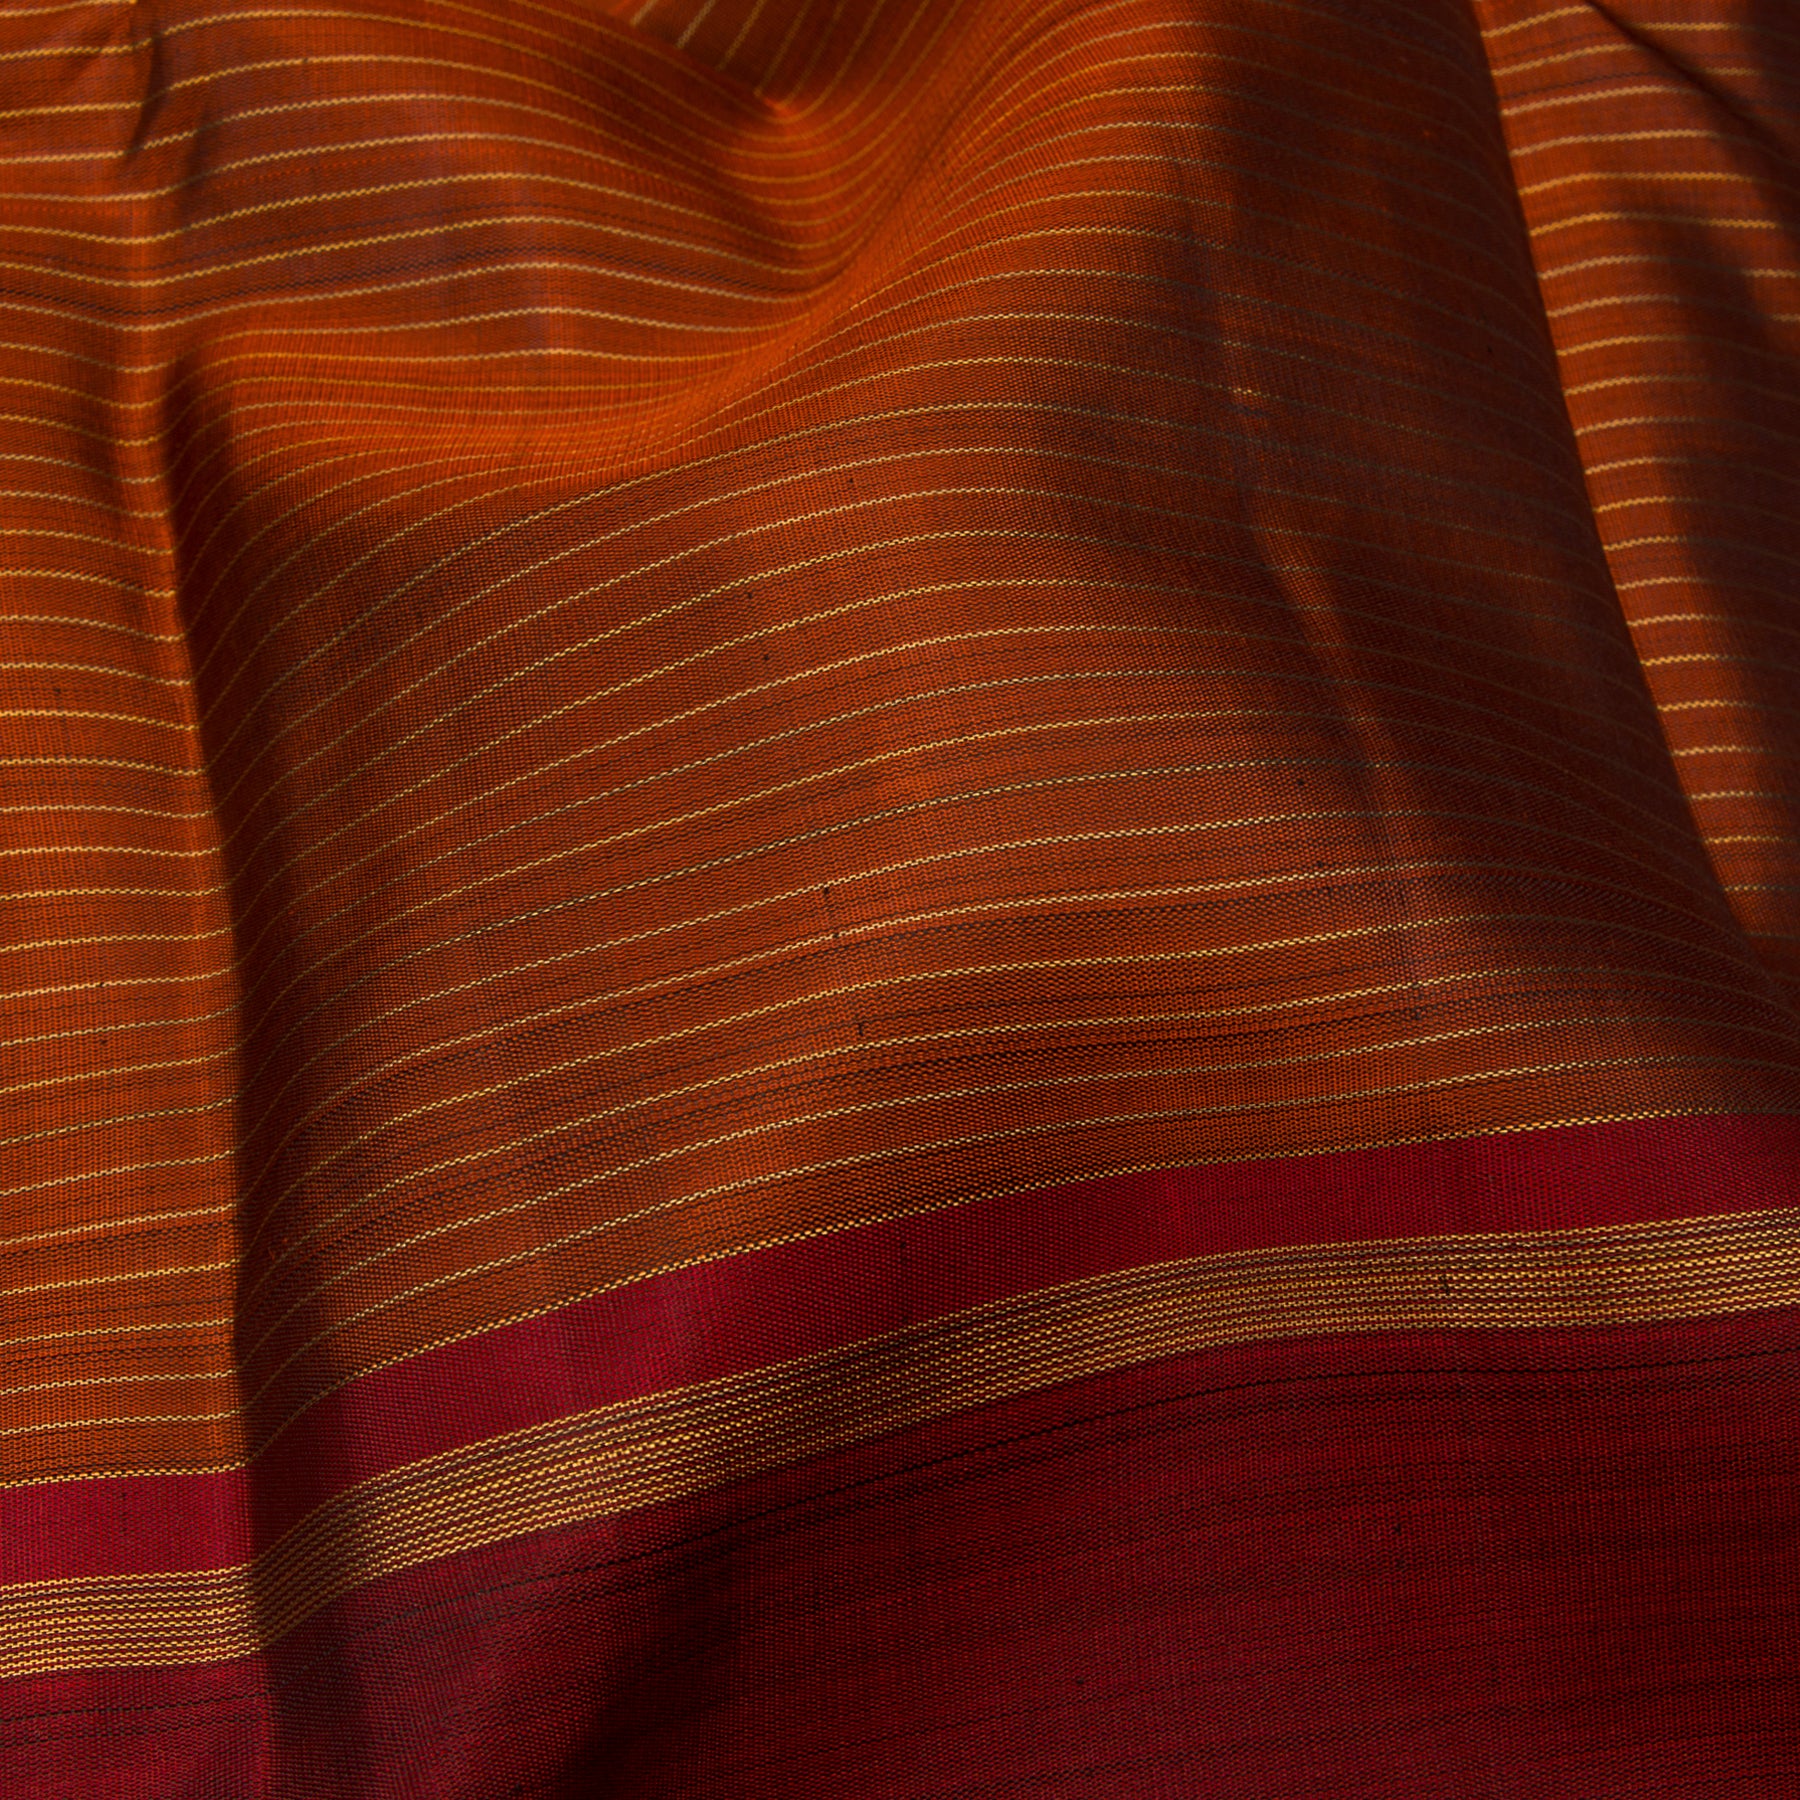 Kanakavalli Kanjivaram Silk Sari 23-611-HS001-09155 - Fabric View